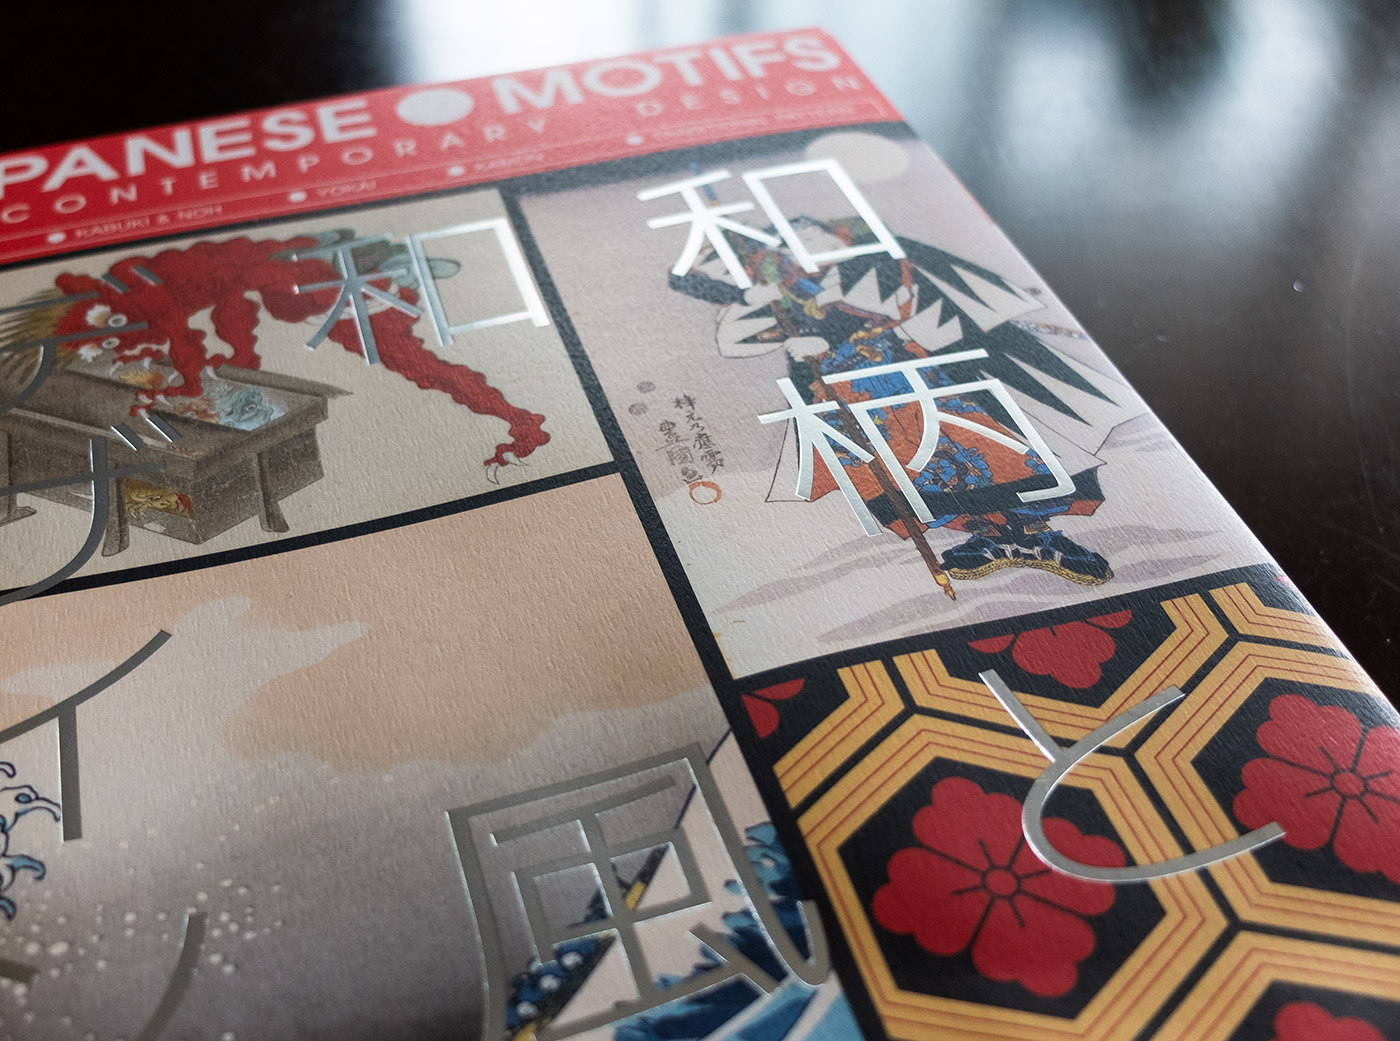 Japanese Motifs design book